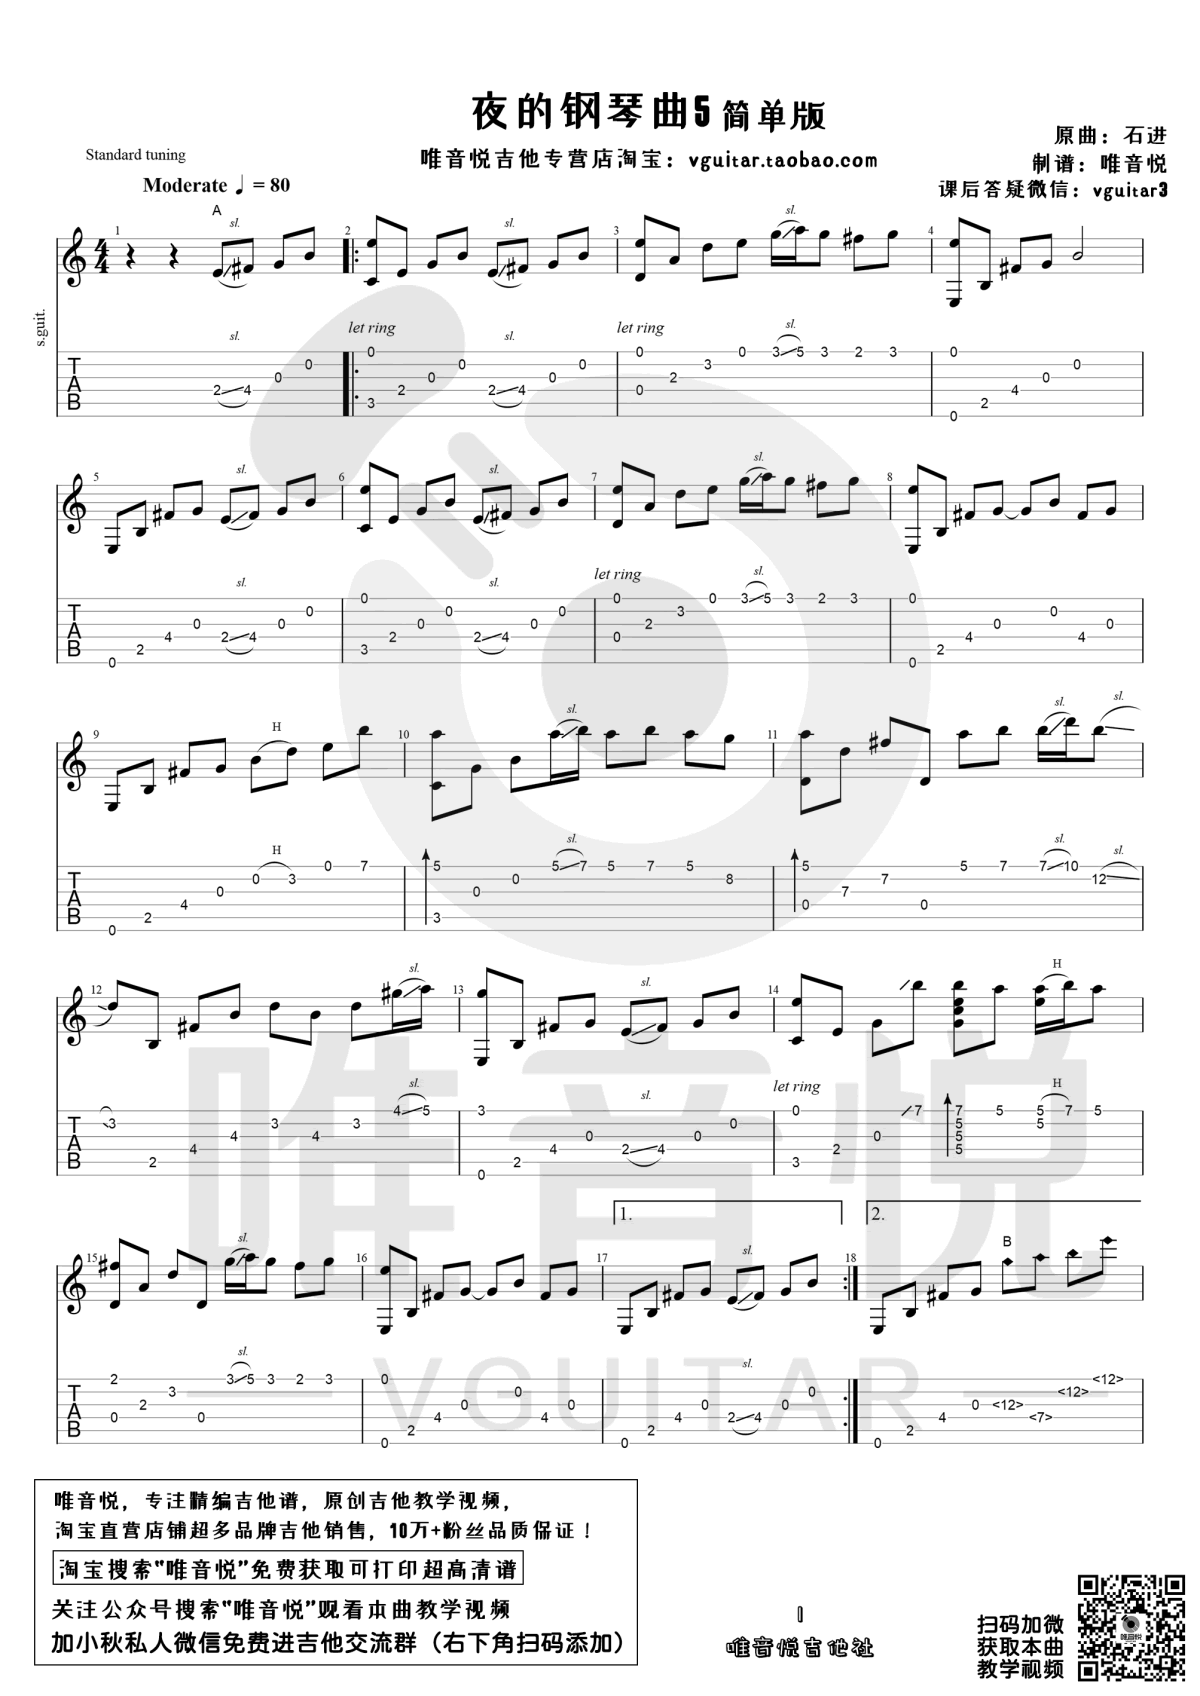 夜的钢琴曲 5双手简谱预览1-钢琴谱文件（五线谱、双手简谱、数字谱、Midi、PDF）免费下载